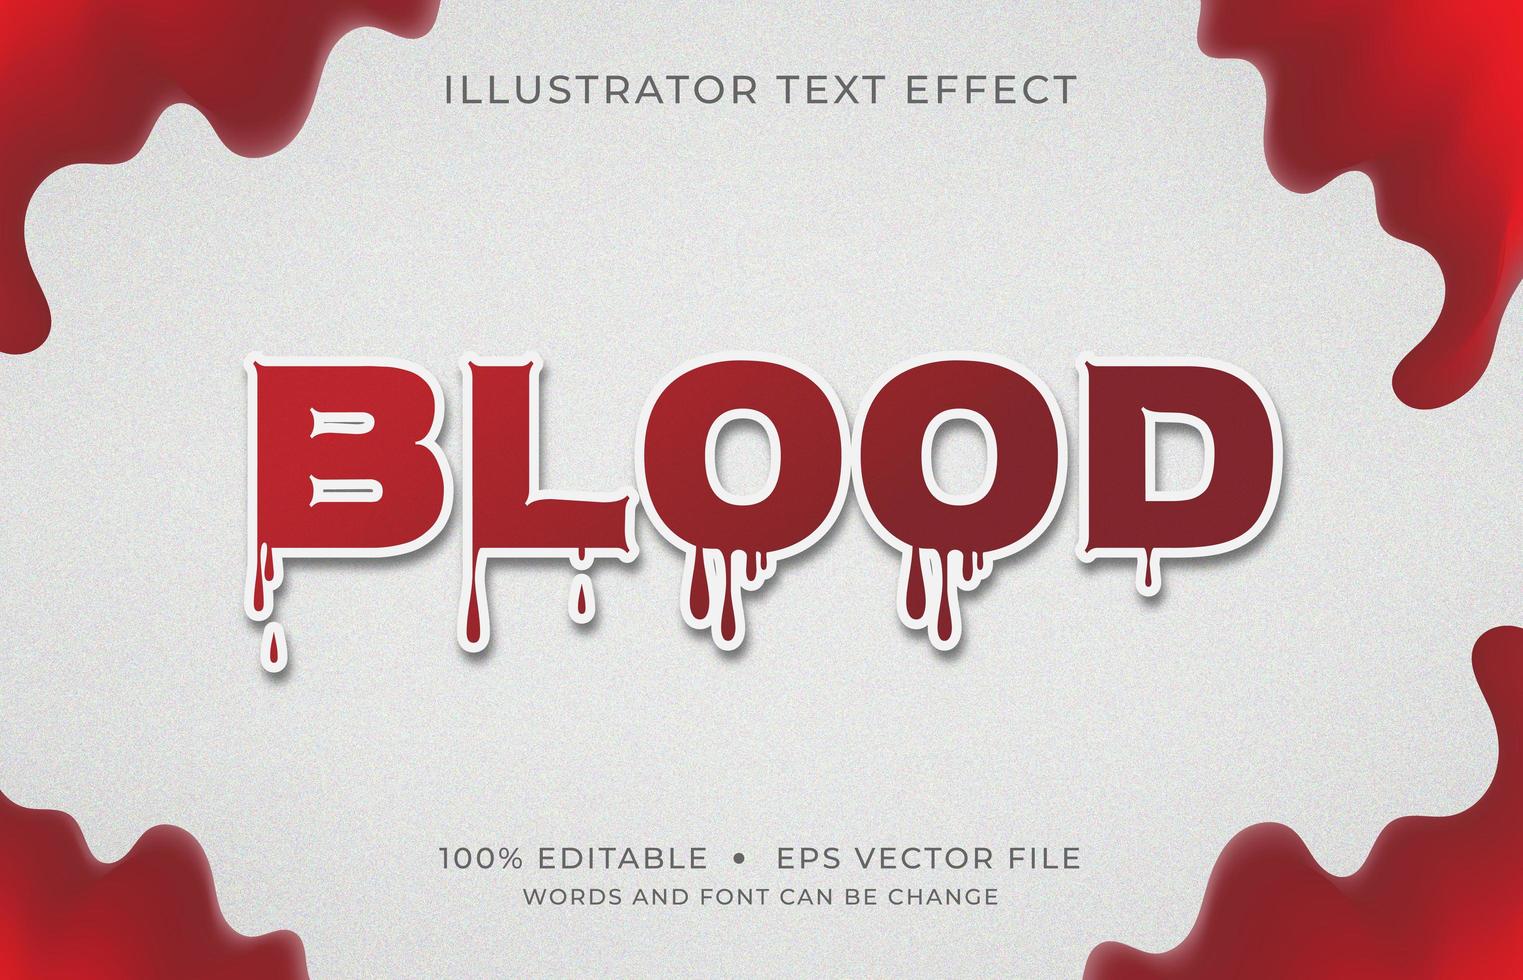 bloed lettertype teksteffect vector